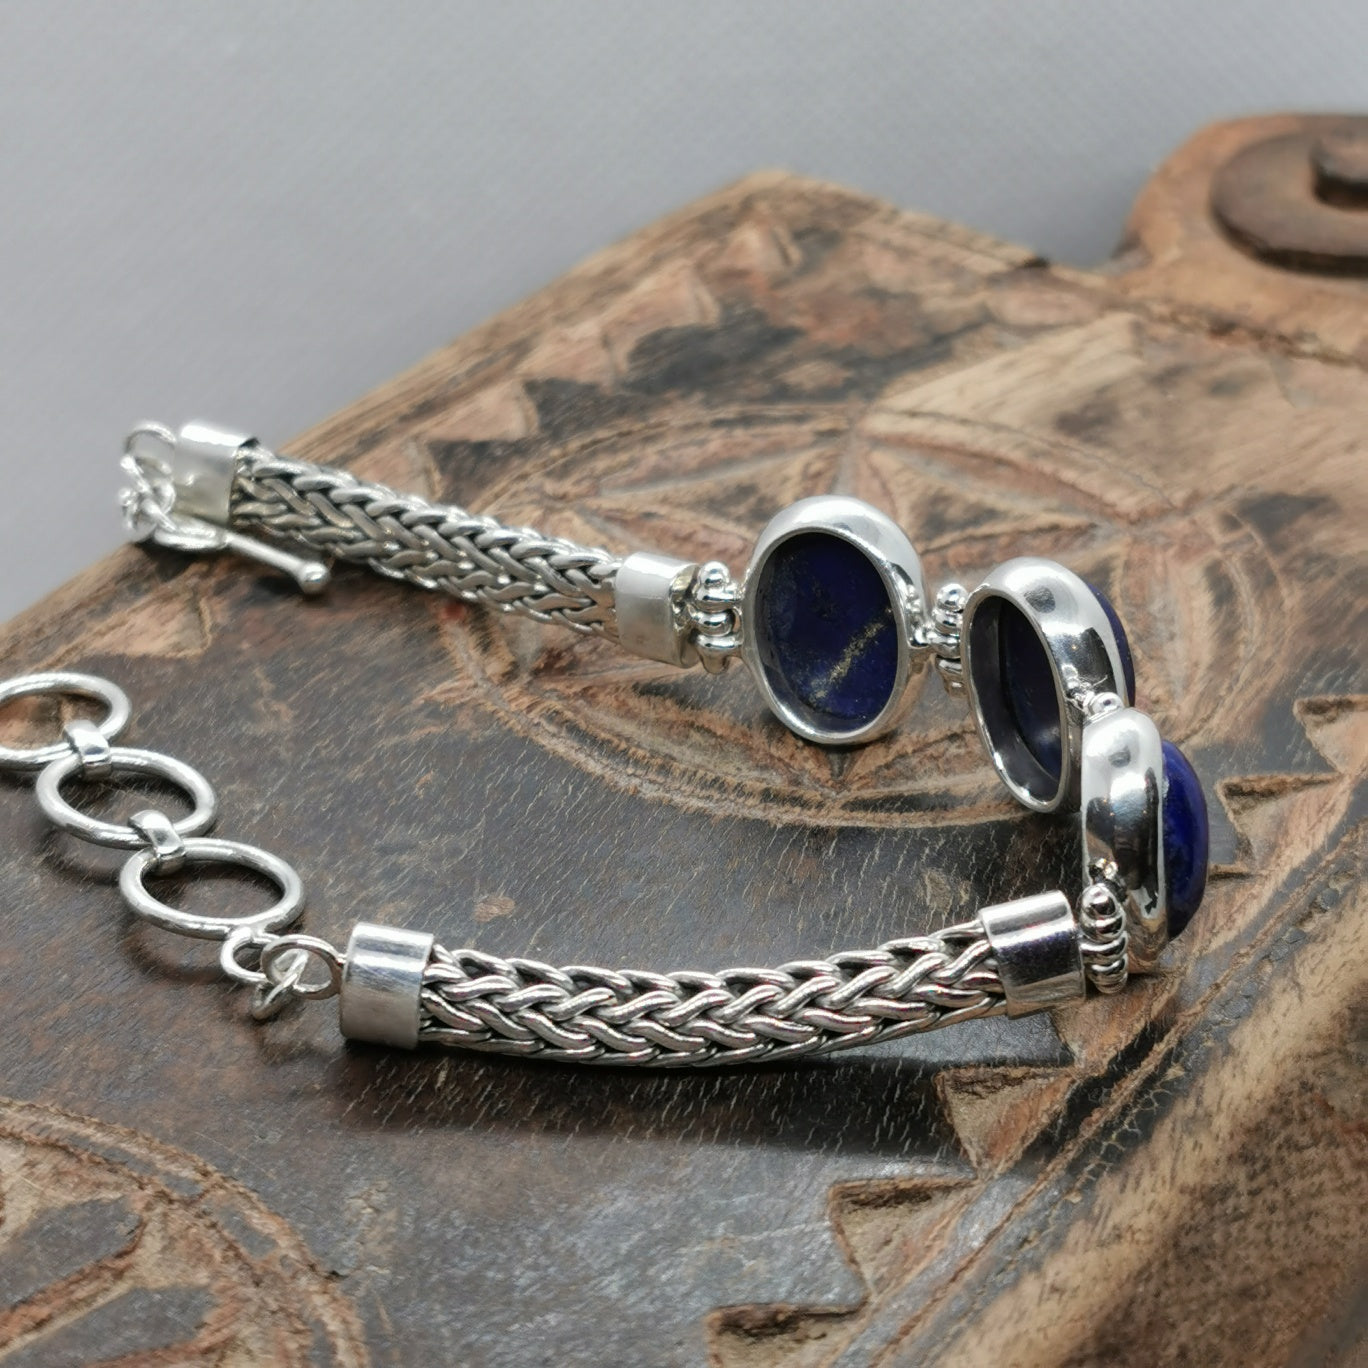 Agarwood & Lapis Healing Gemstone Bracelet with Silver Artisan